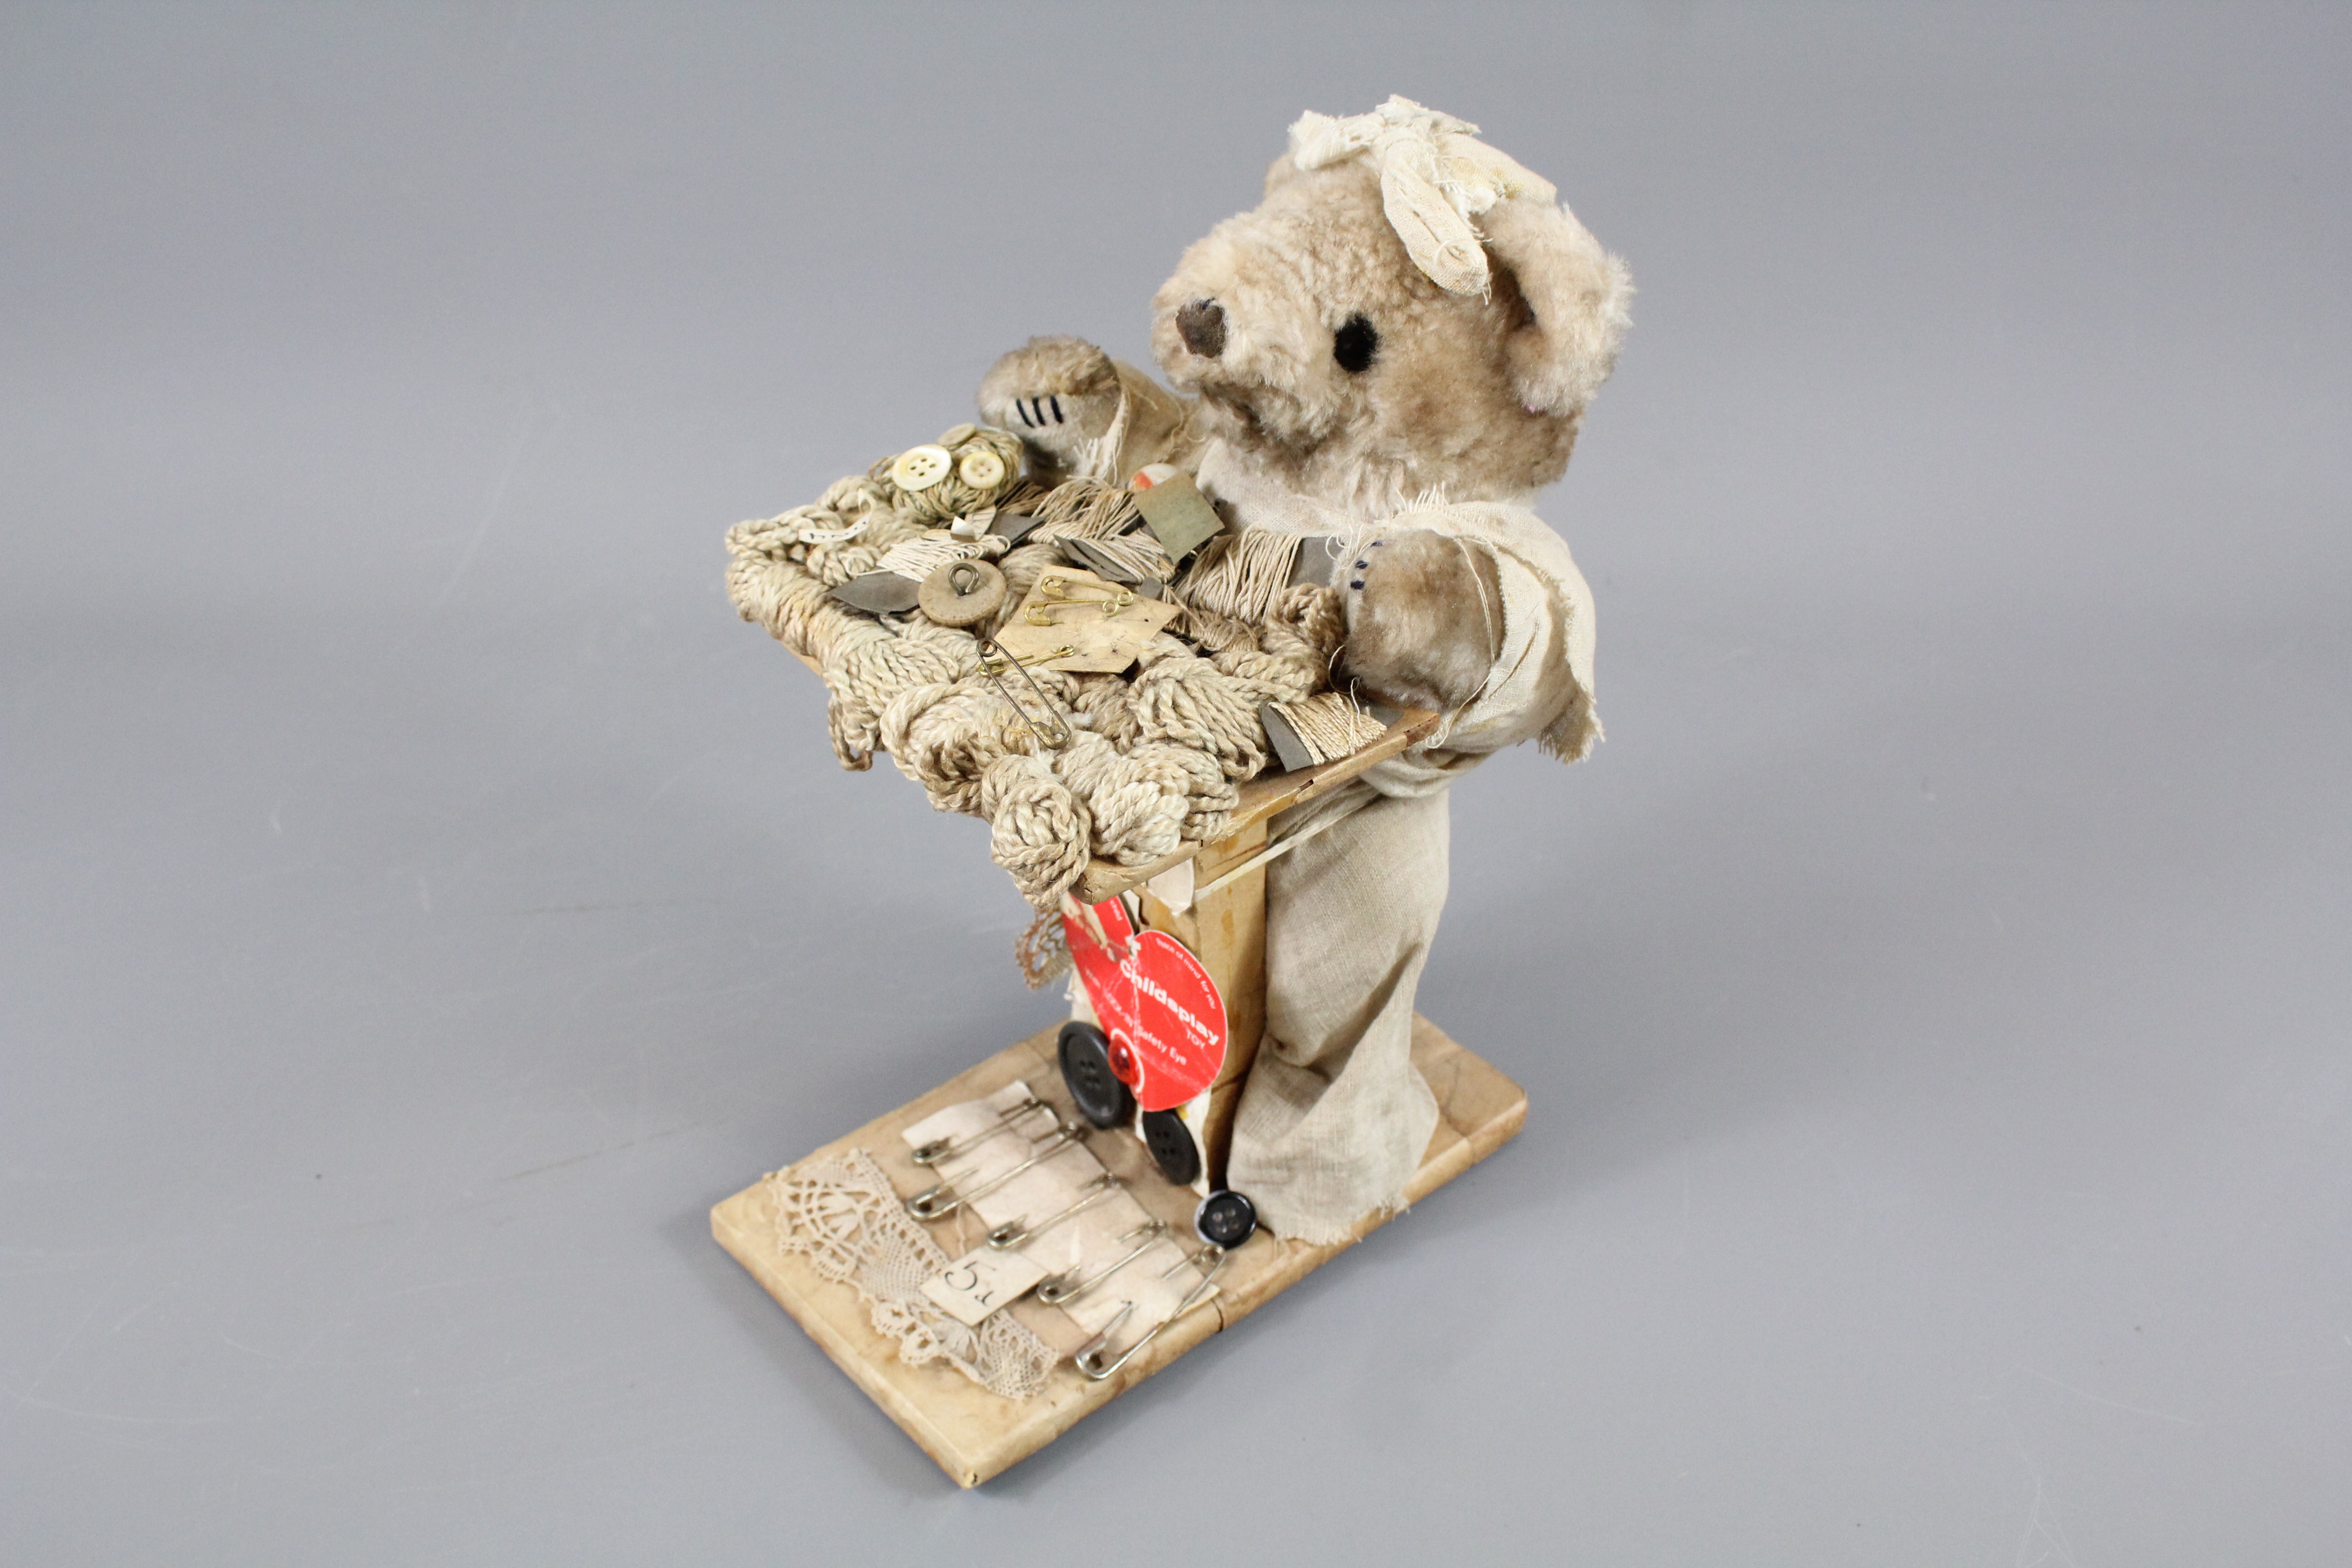 A "Pedlar Doll" Teddy Bear - Image 6 of 6